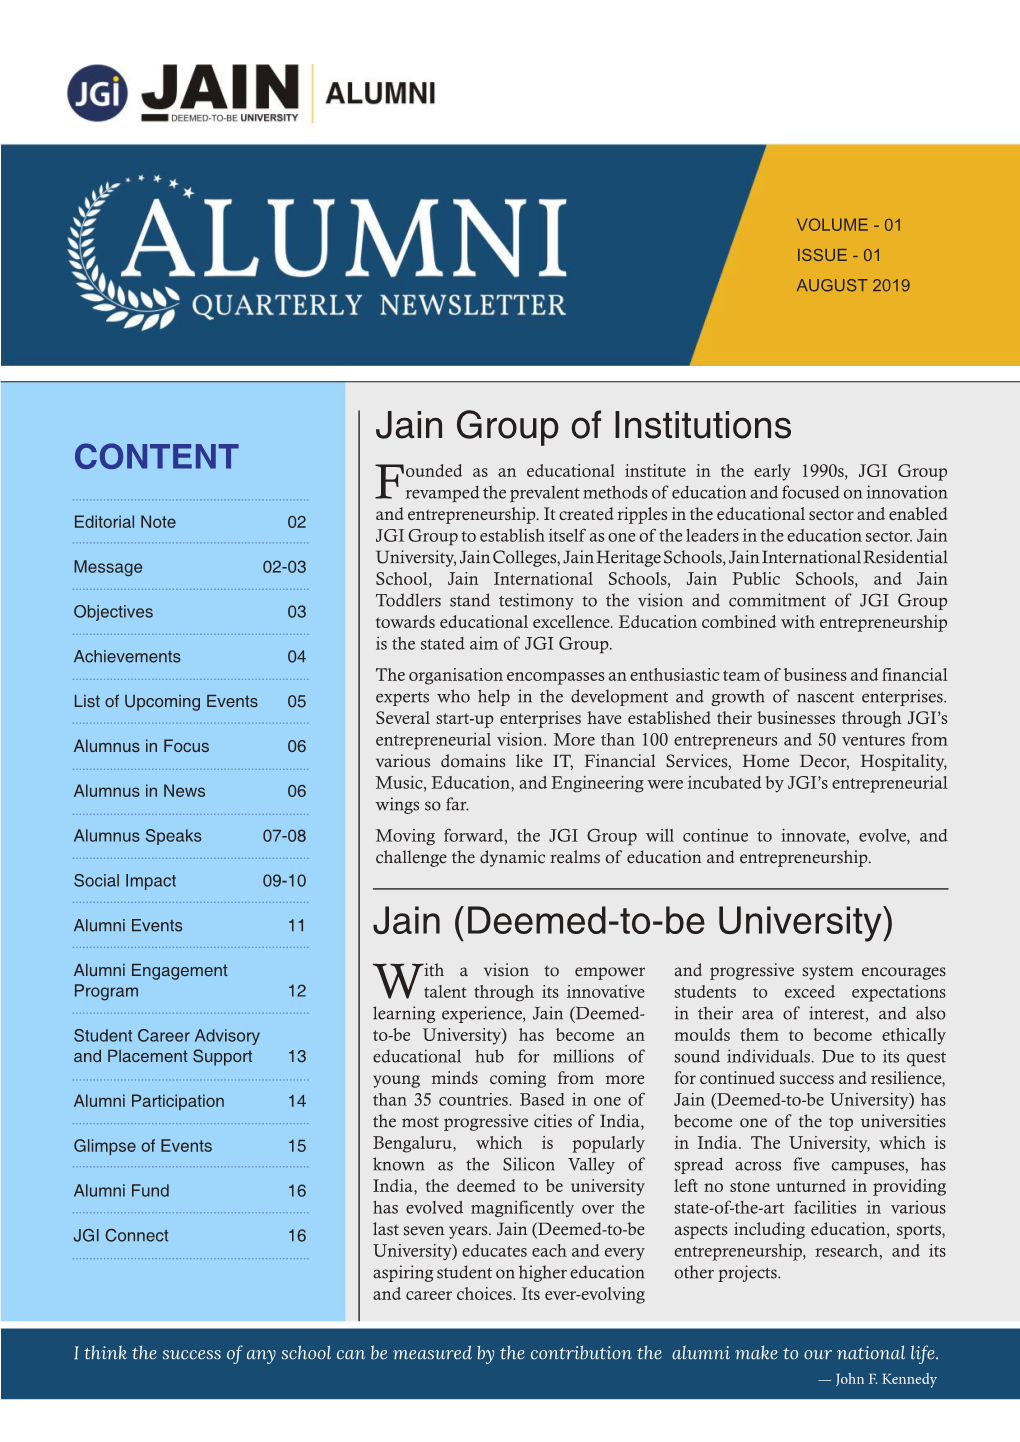 Alumni Quarterly Newsletter